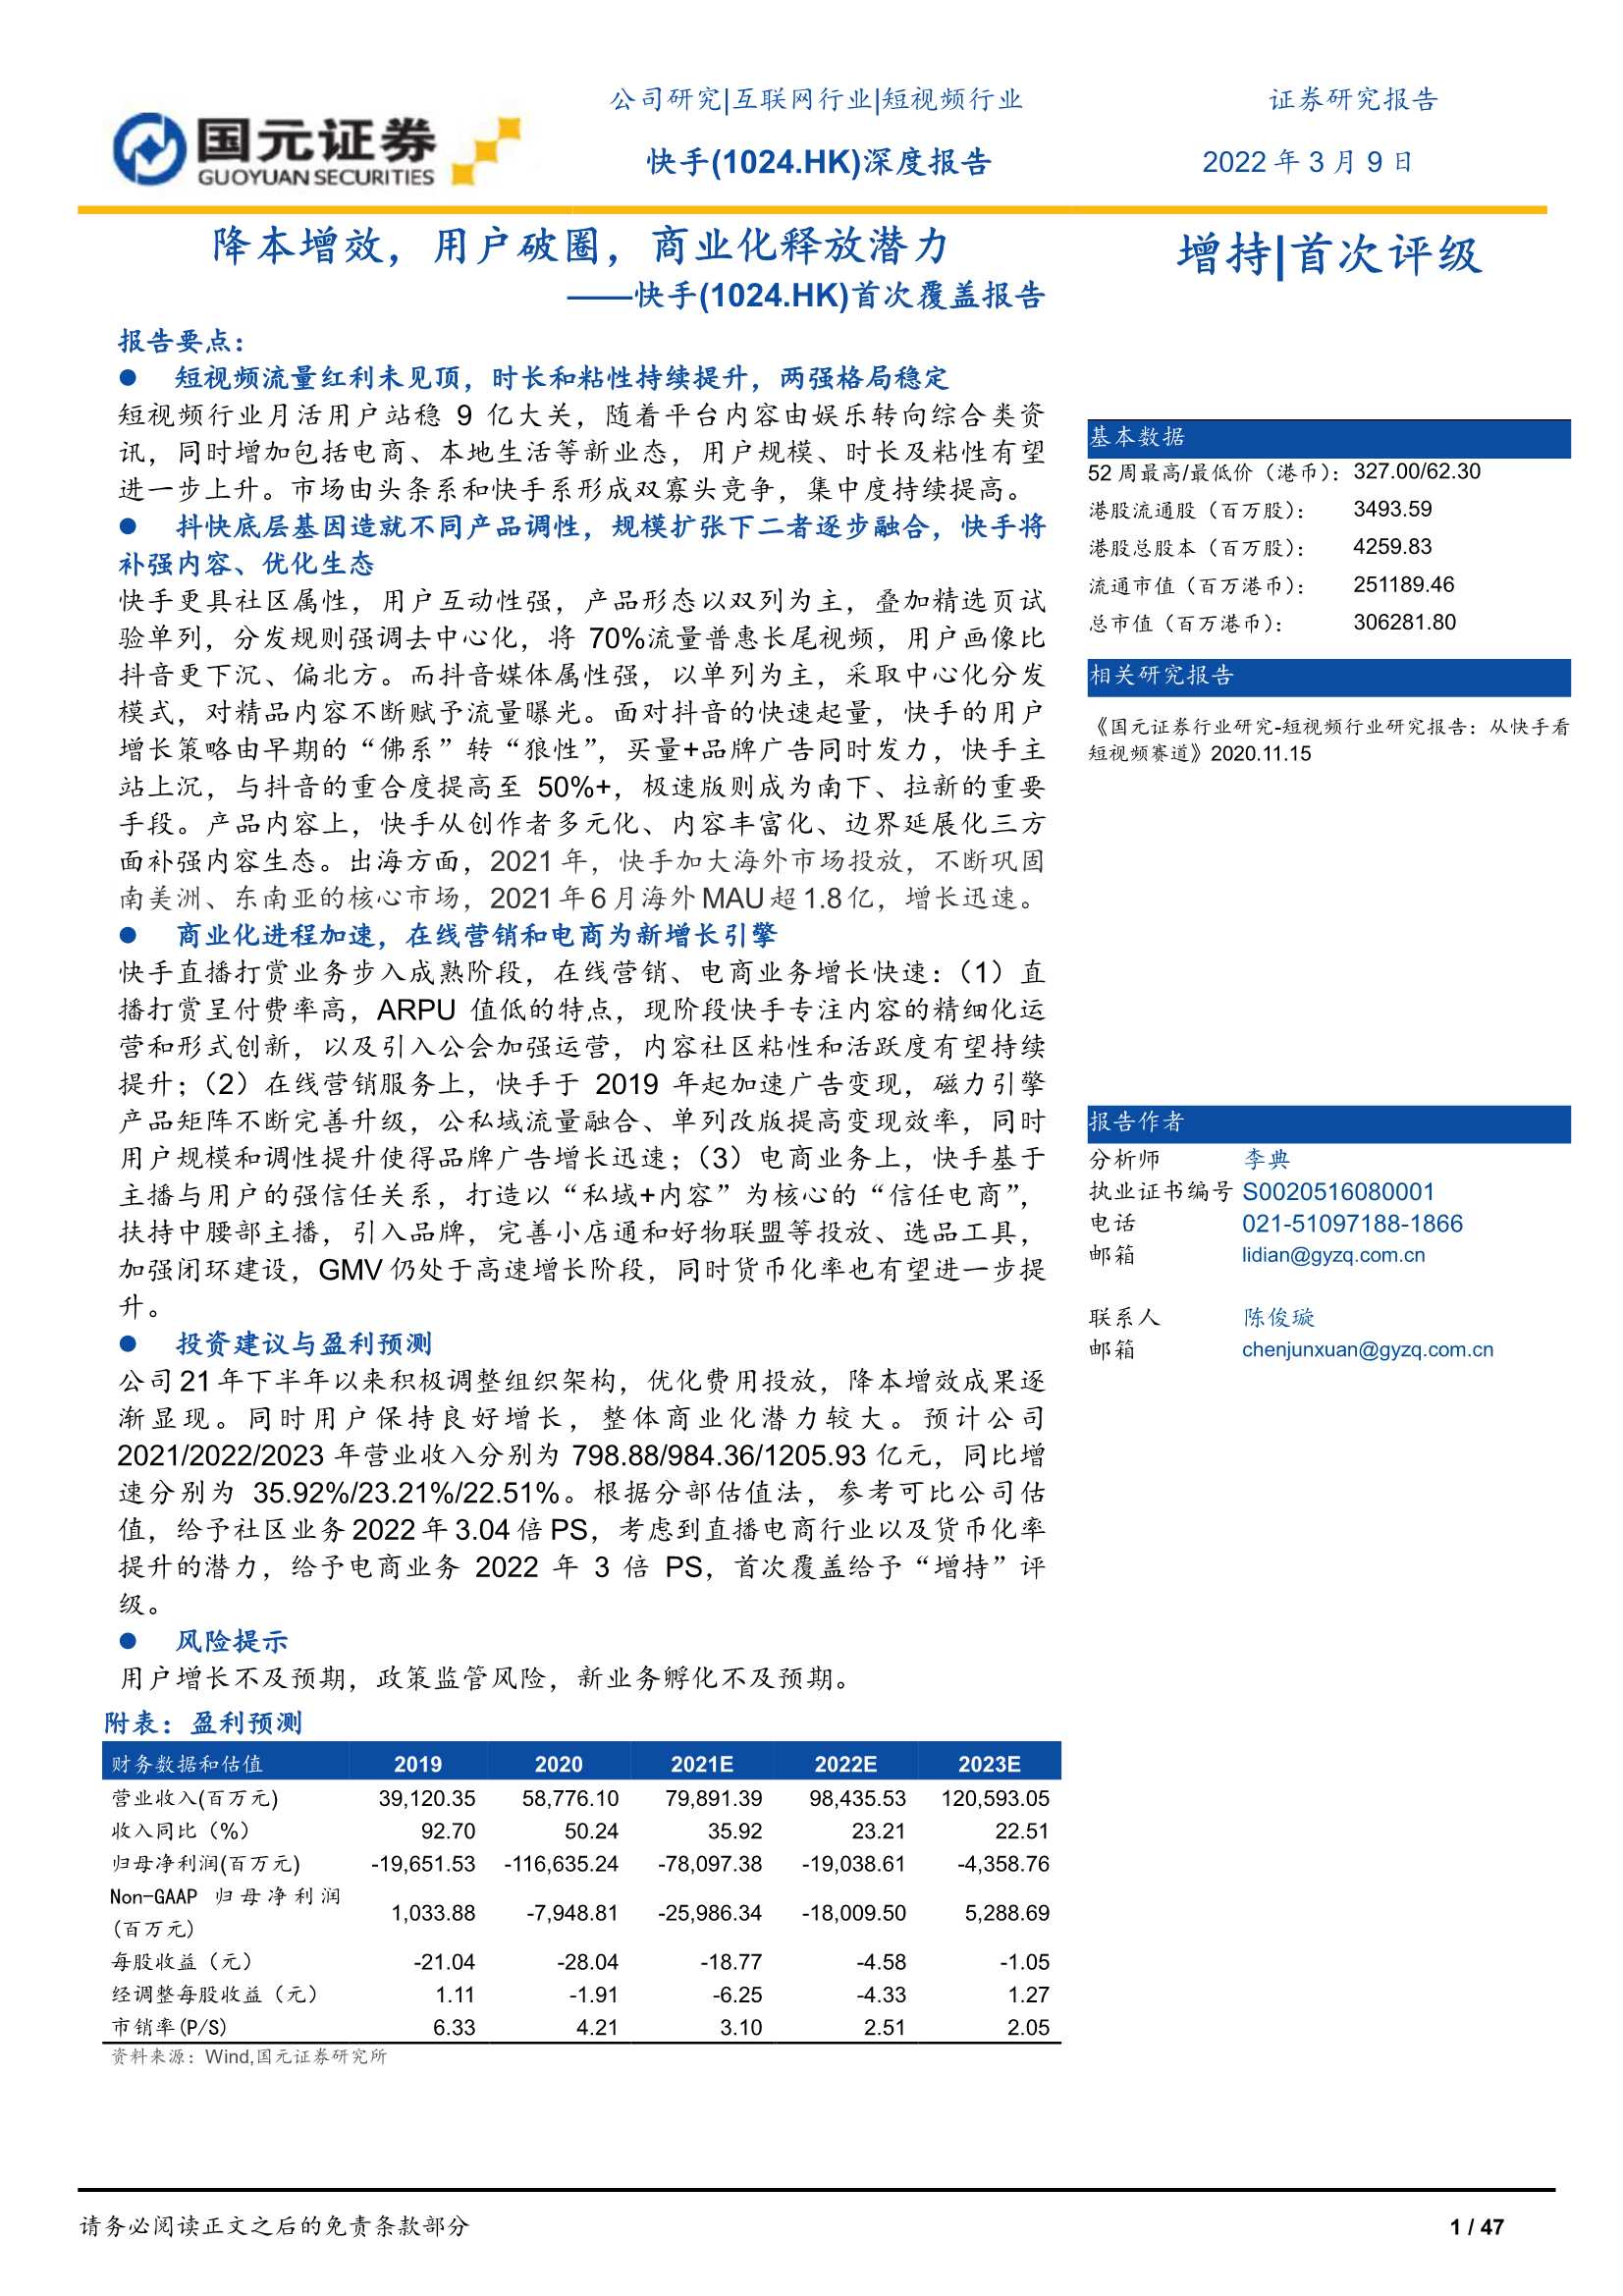 国元证券-快手-1024.HK-首次覆盖报告：降本增效，用户破圈，商业化释放潜力-20220309-47页